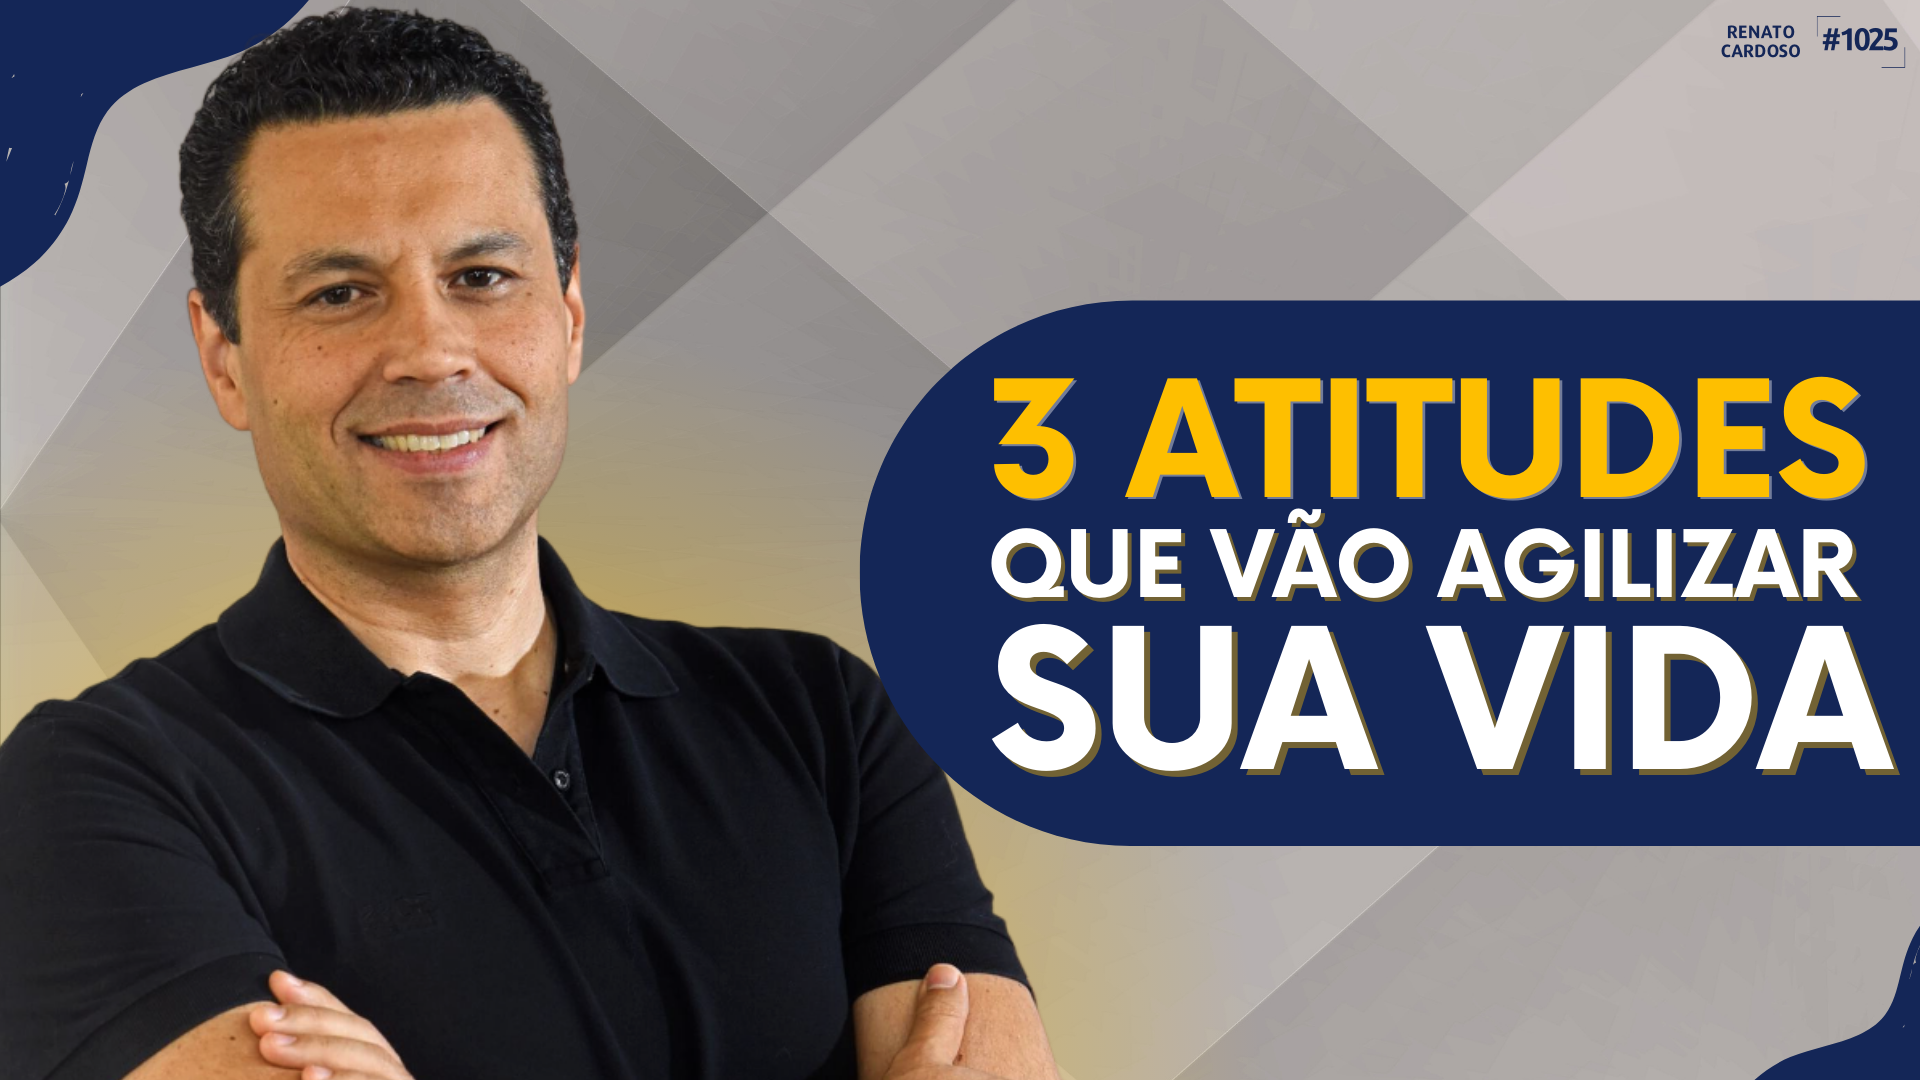 post3 ATITUDES QUE VÃO AGILIZAR SUA VIDAna categoriaRenato Cardoso